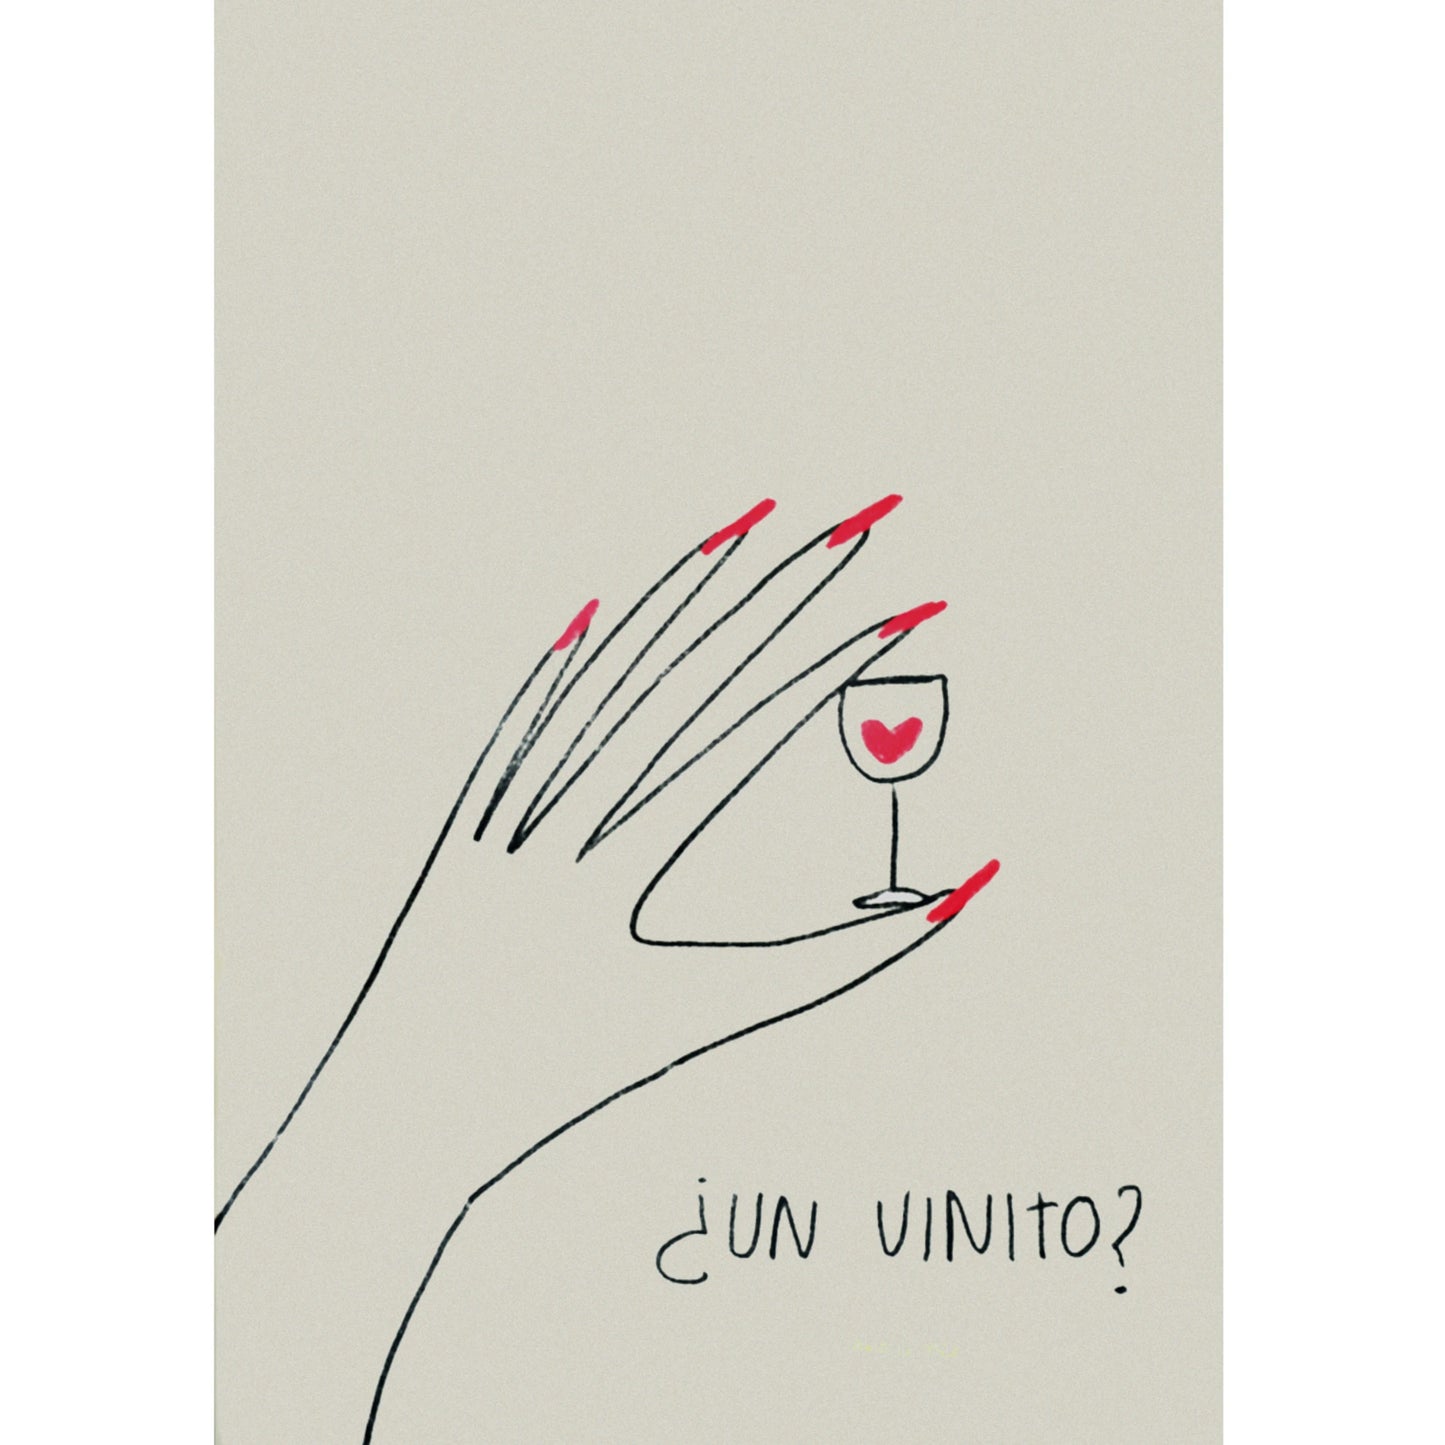 Ilustración ¿un vinito? de la artista María Gómez, de una mano con las uñas pintadas de rojo sujetando una copa pequeña de vino con un corazón rojo dentro